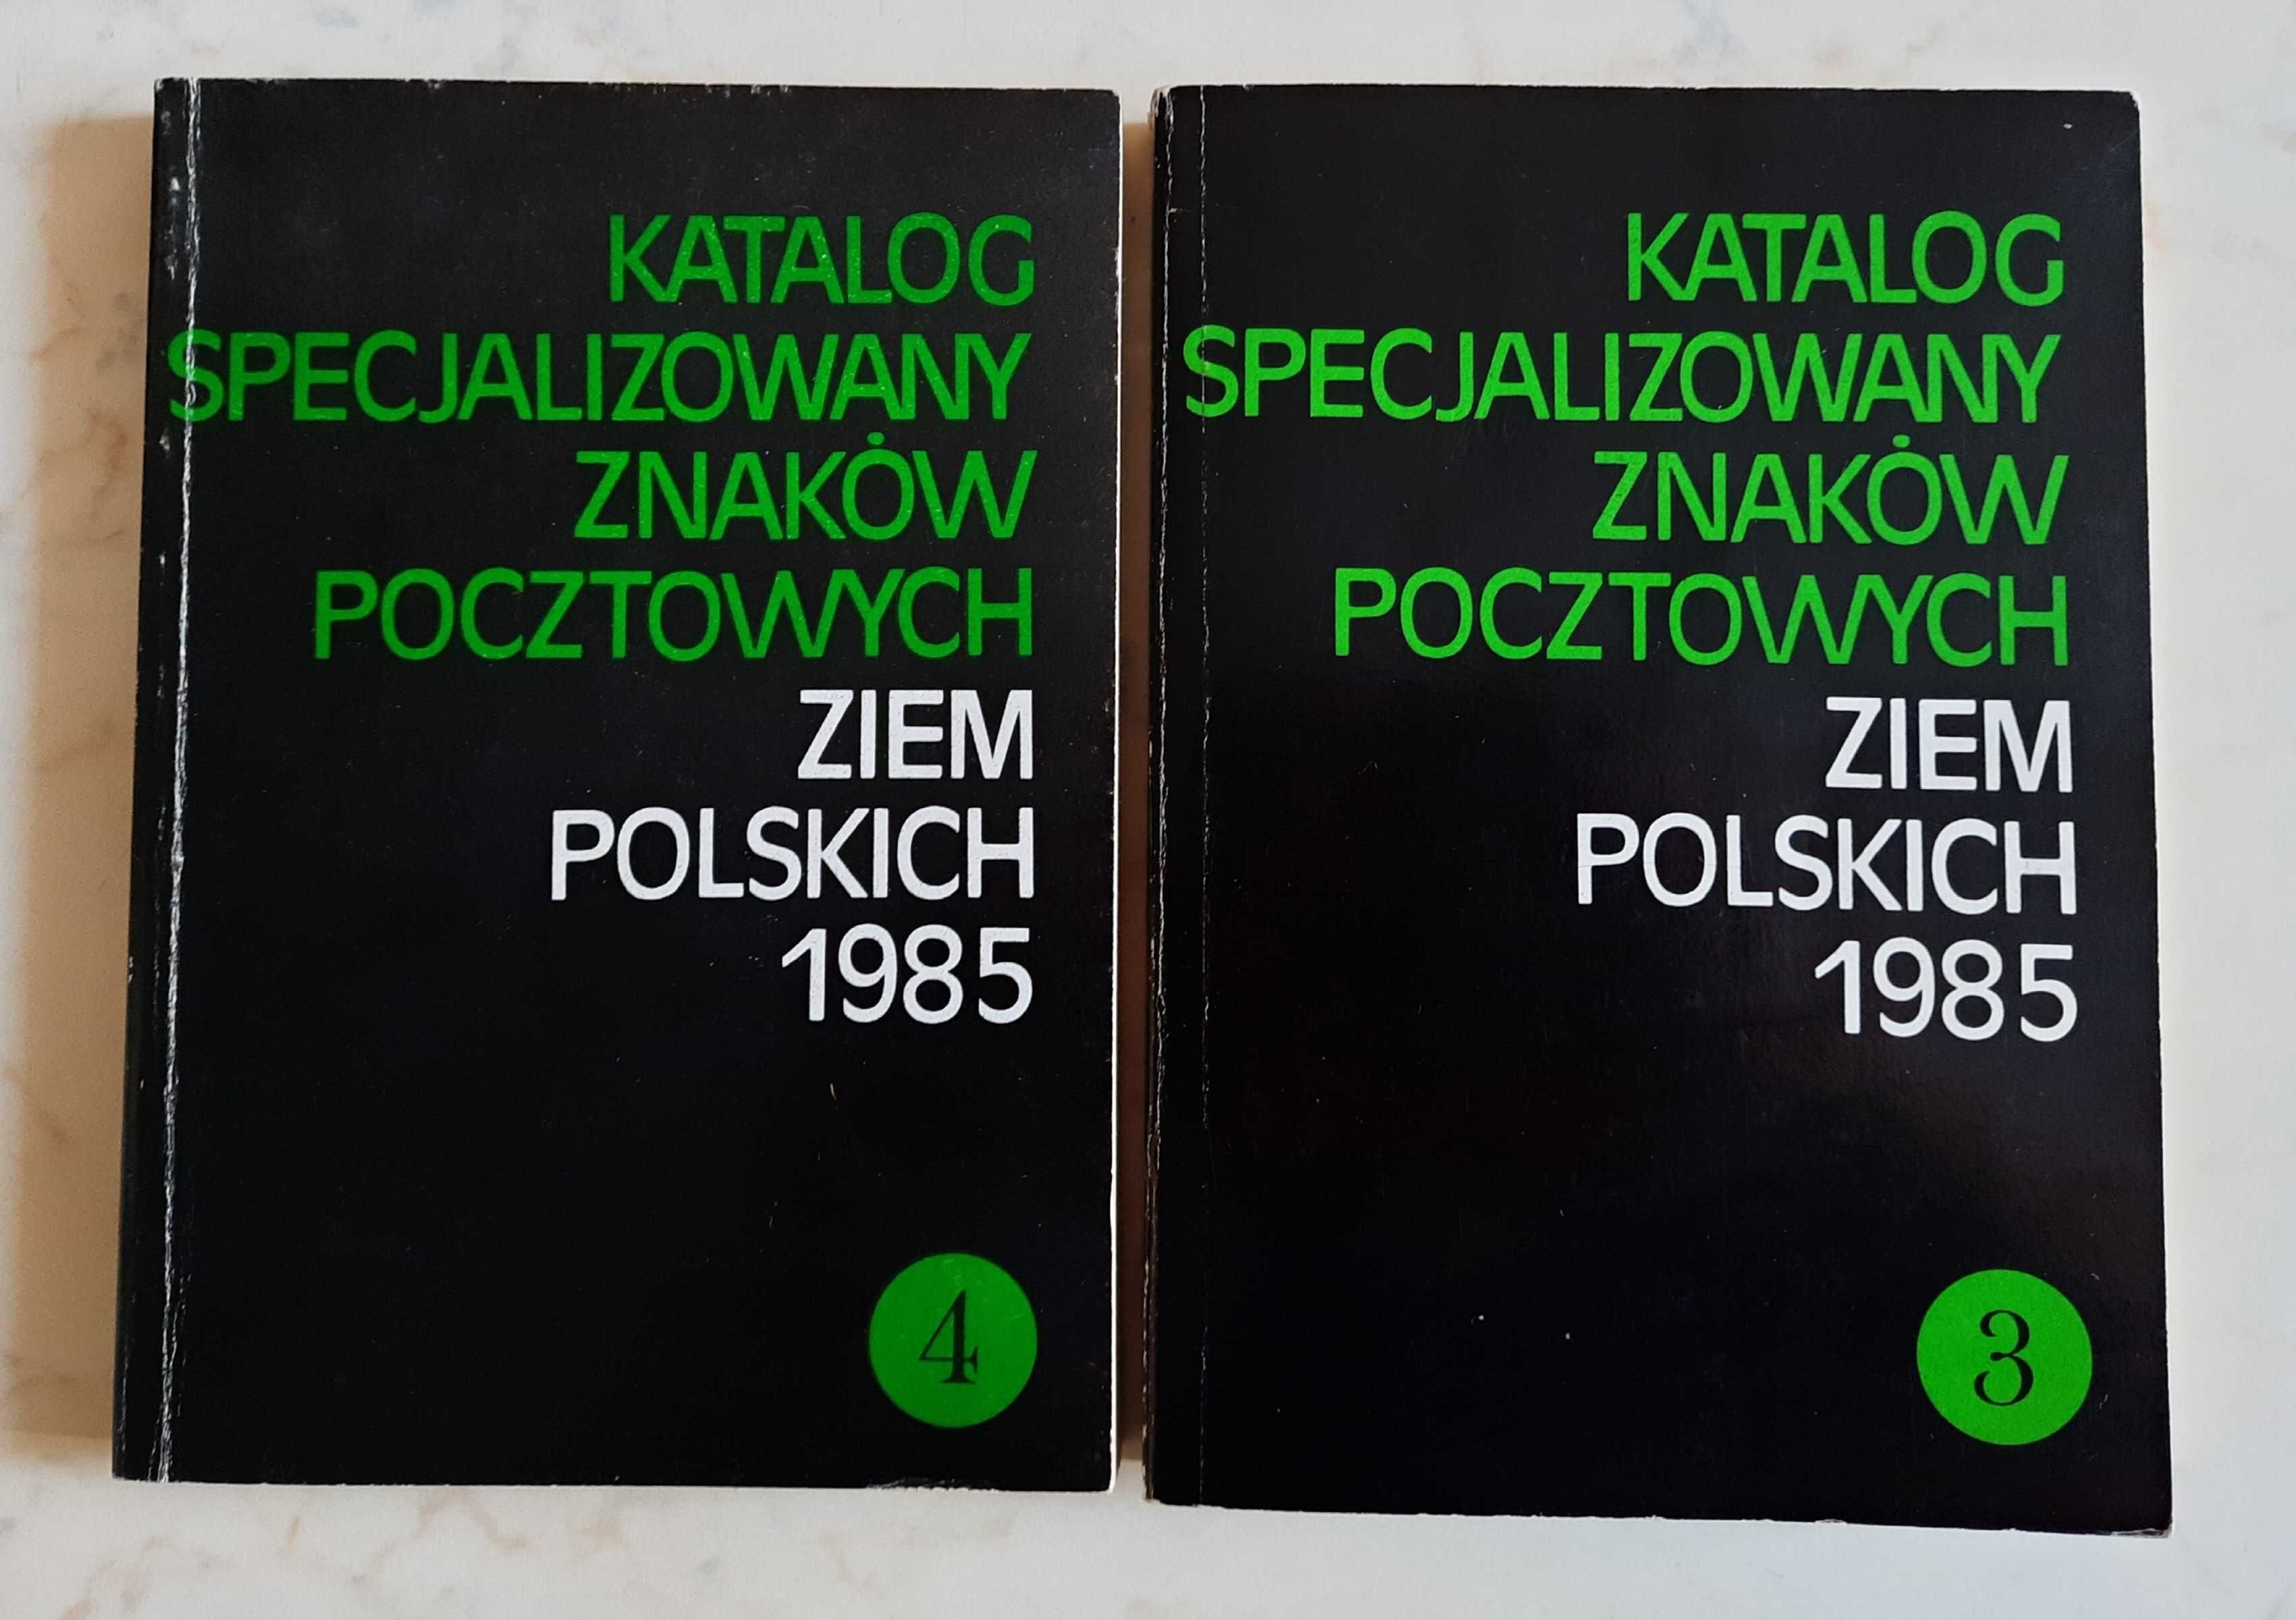 Katalog znaków pocztowych tom 3 i 4 z 1985 roku